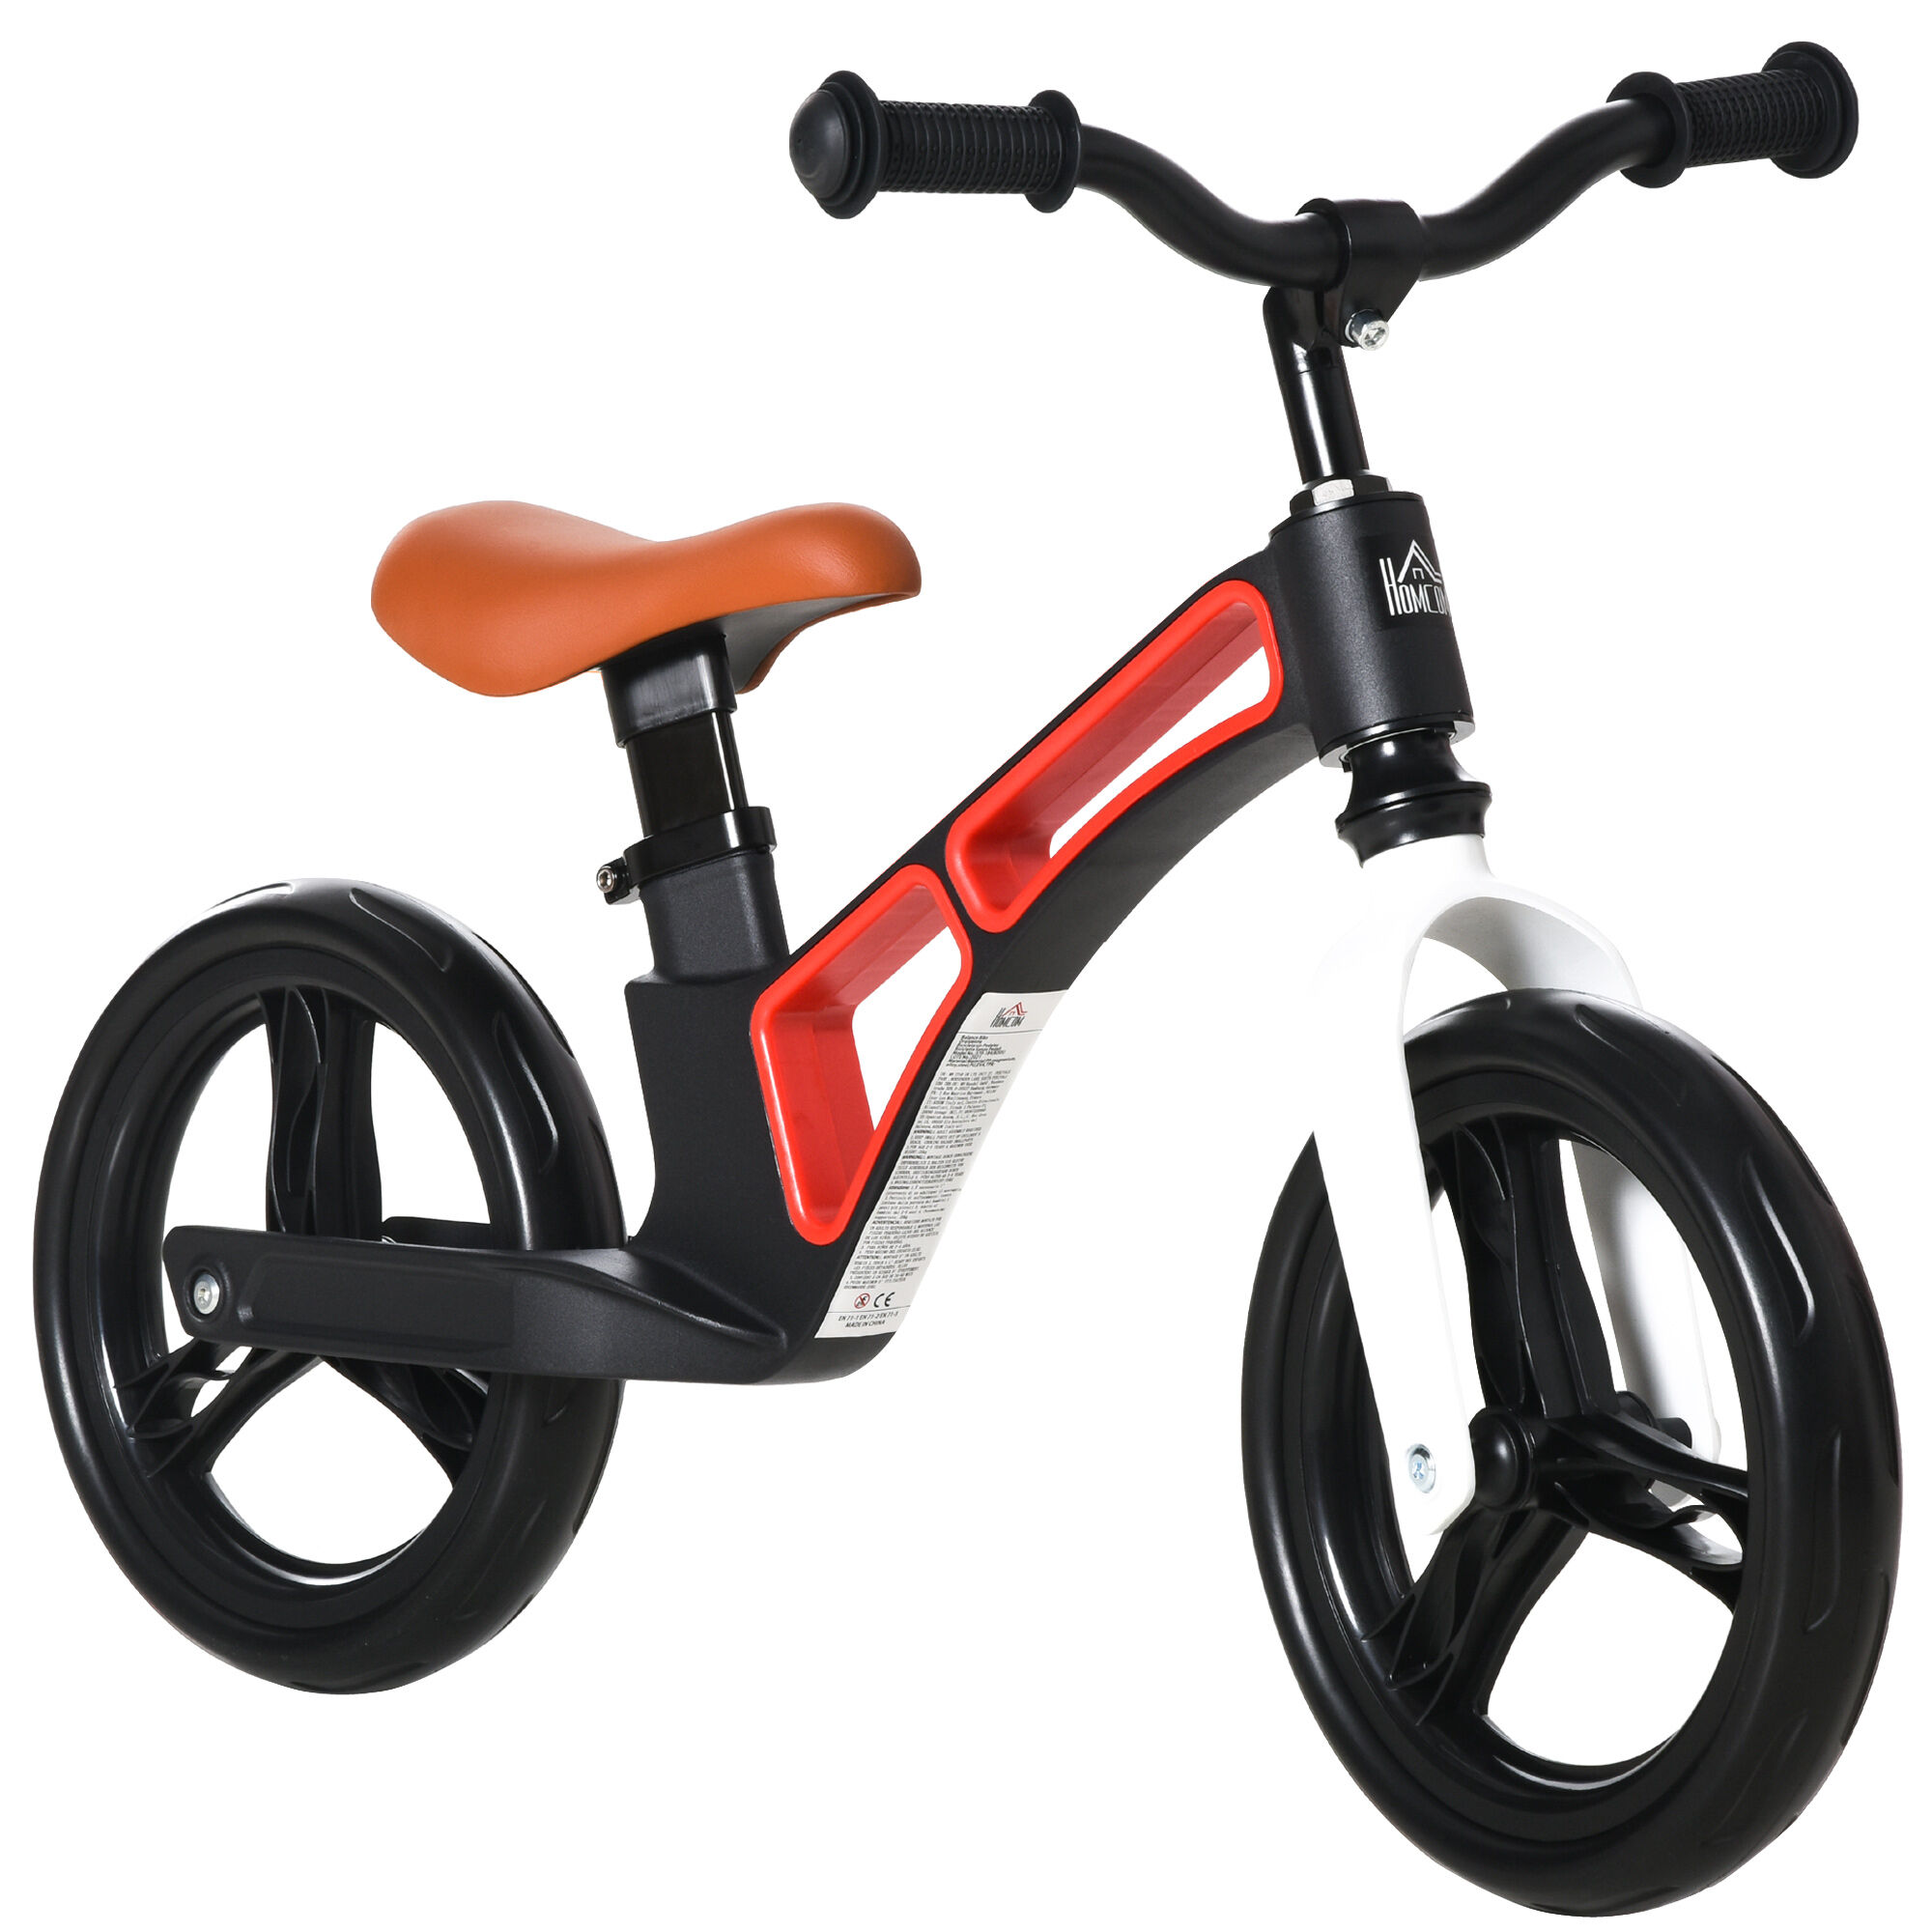 homcom bici senza pedali per bambini 2-5 anni con sellino e manubrio regolabili in altezza, ruote piene, 86x41x49-56cm, nero e bianco